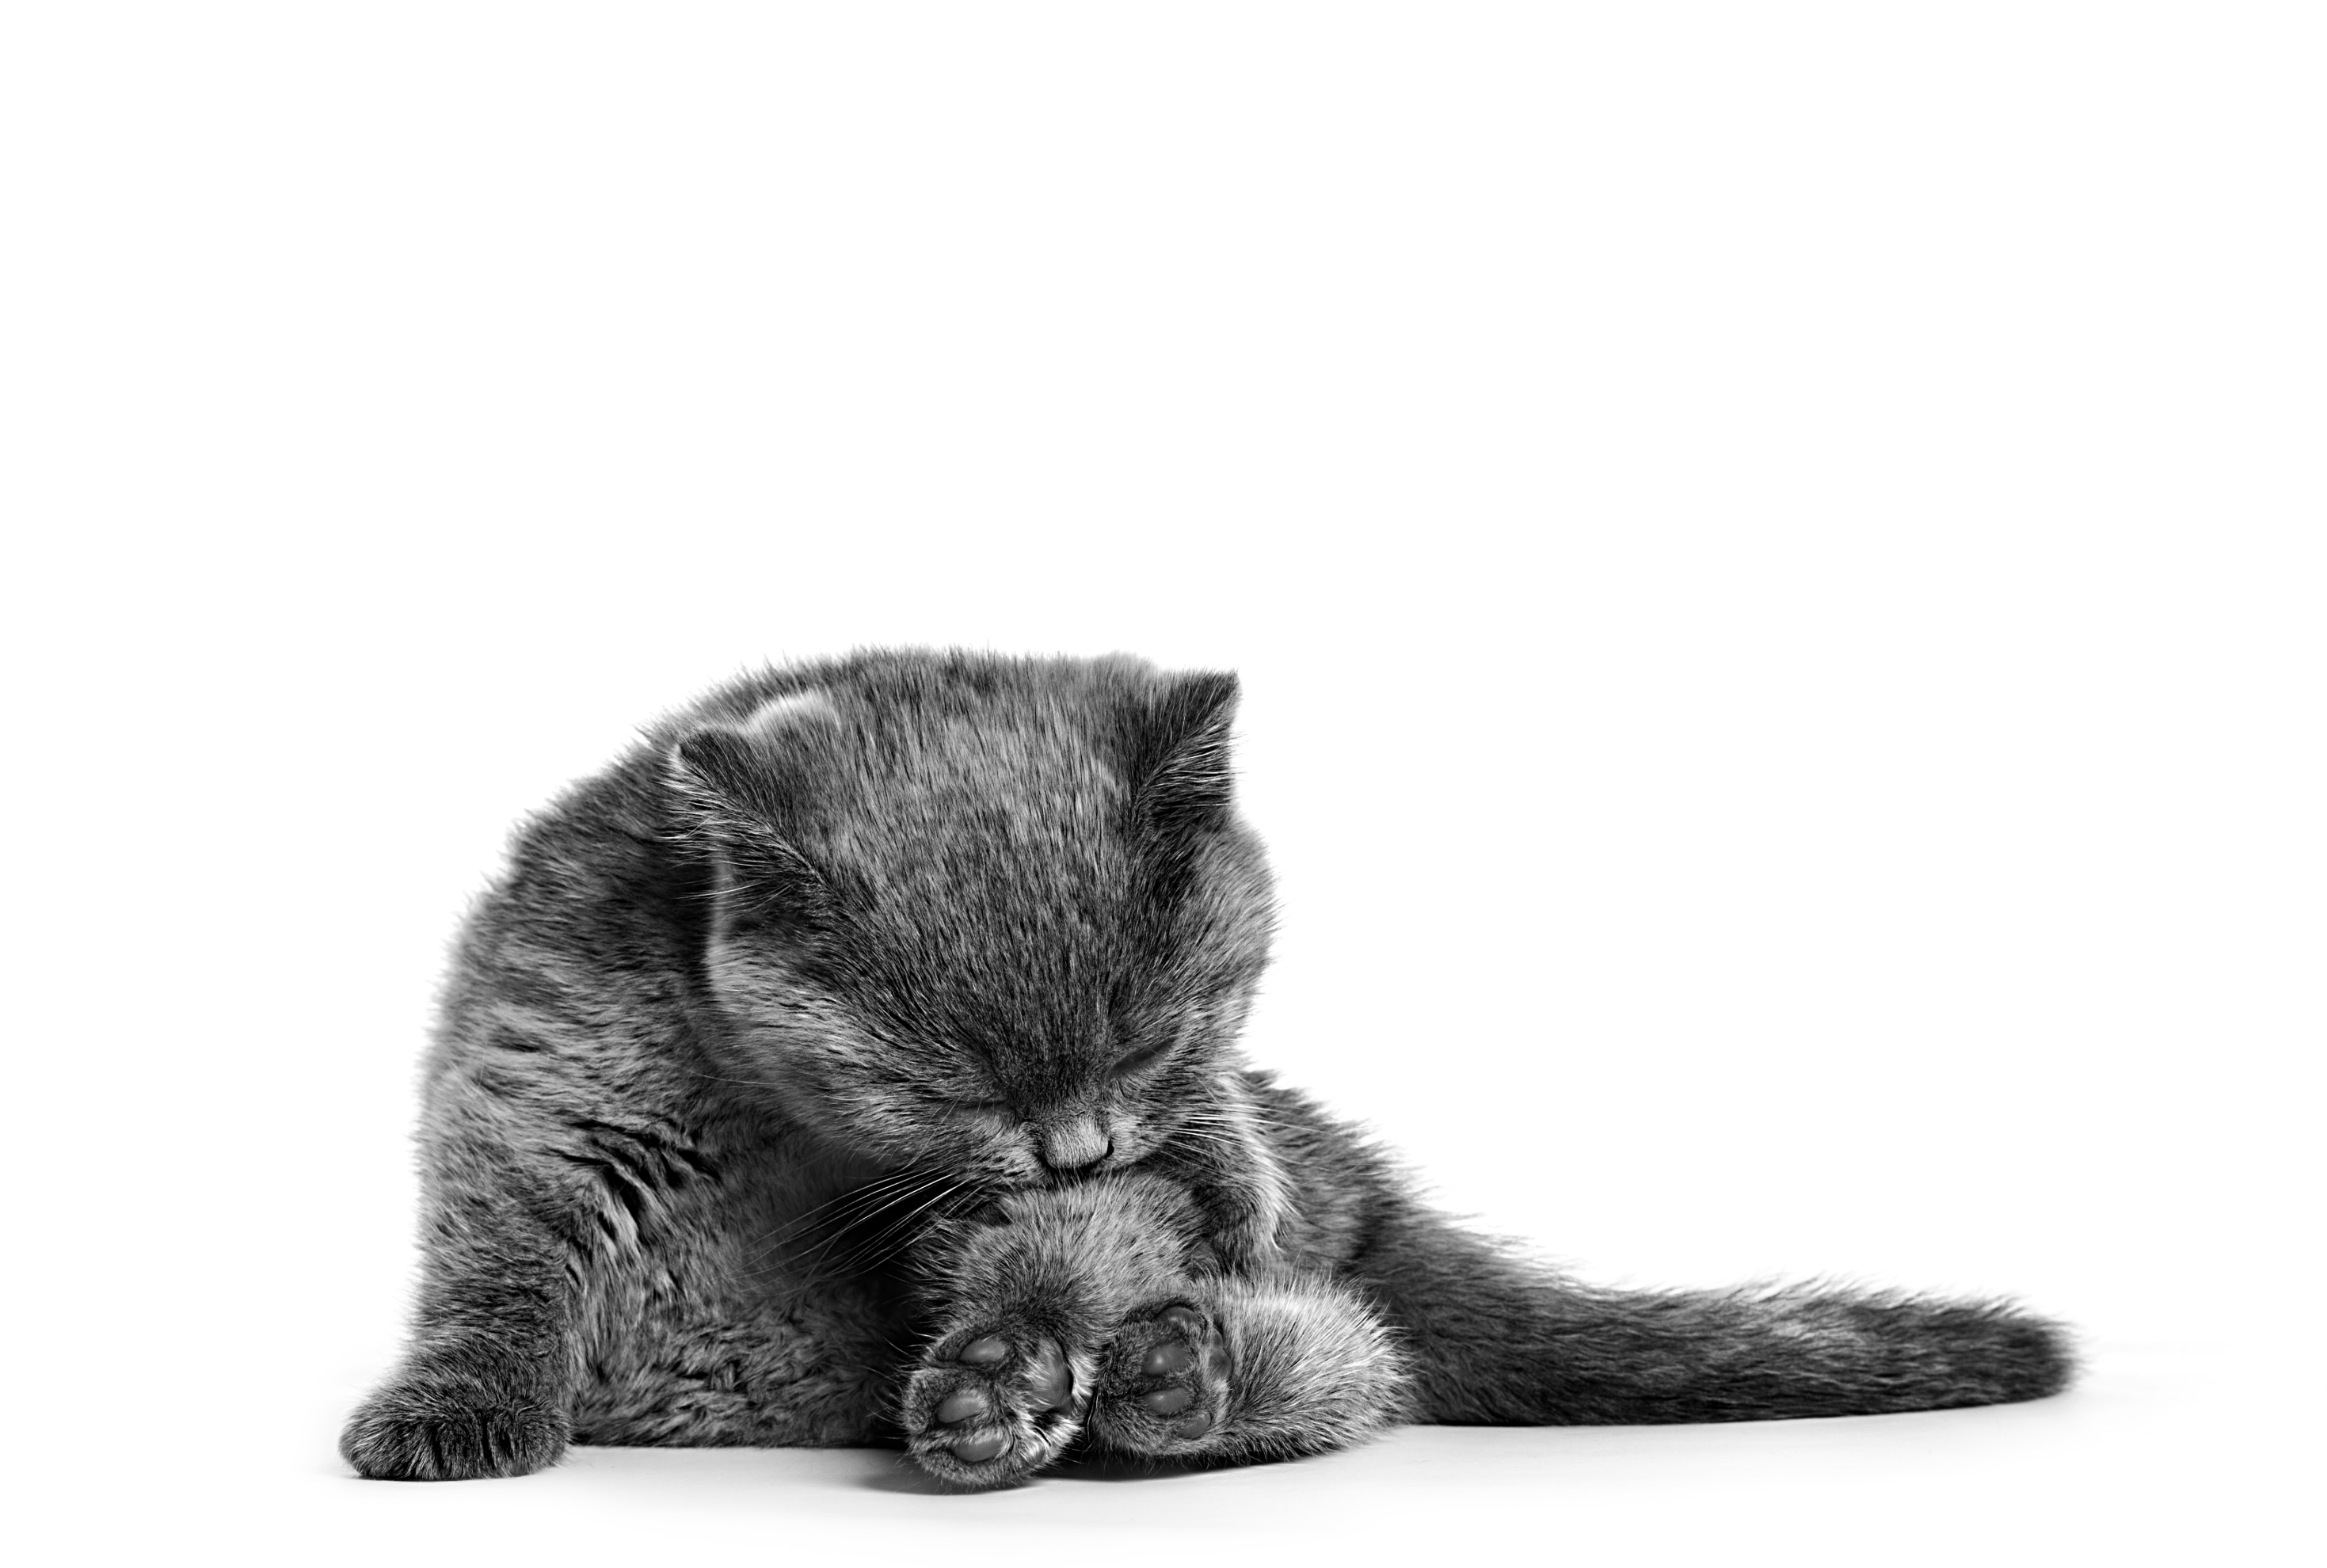 Britse Korthaar kitten die zijn vacht verzorgt in zwart-wit